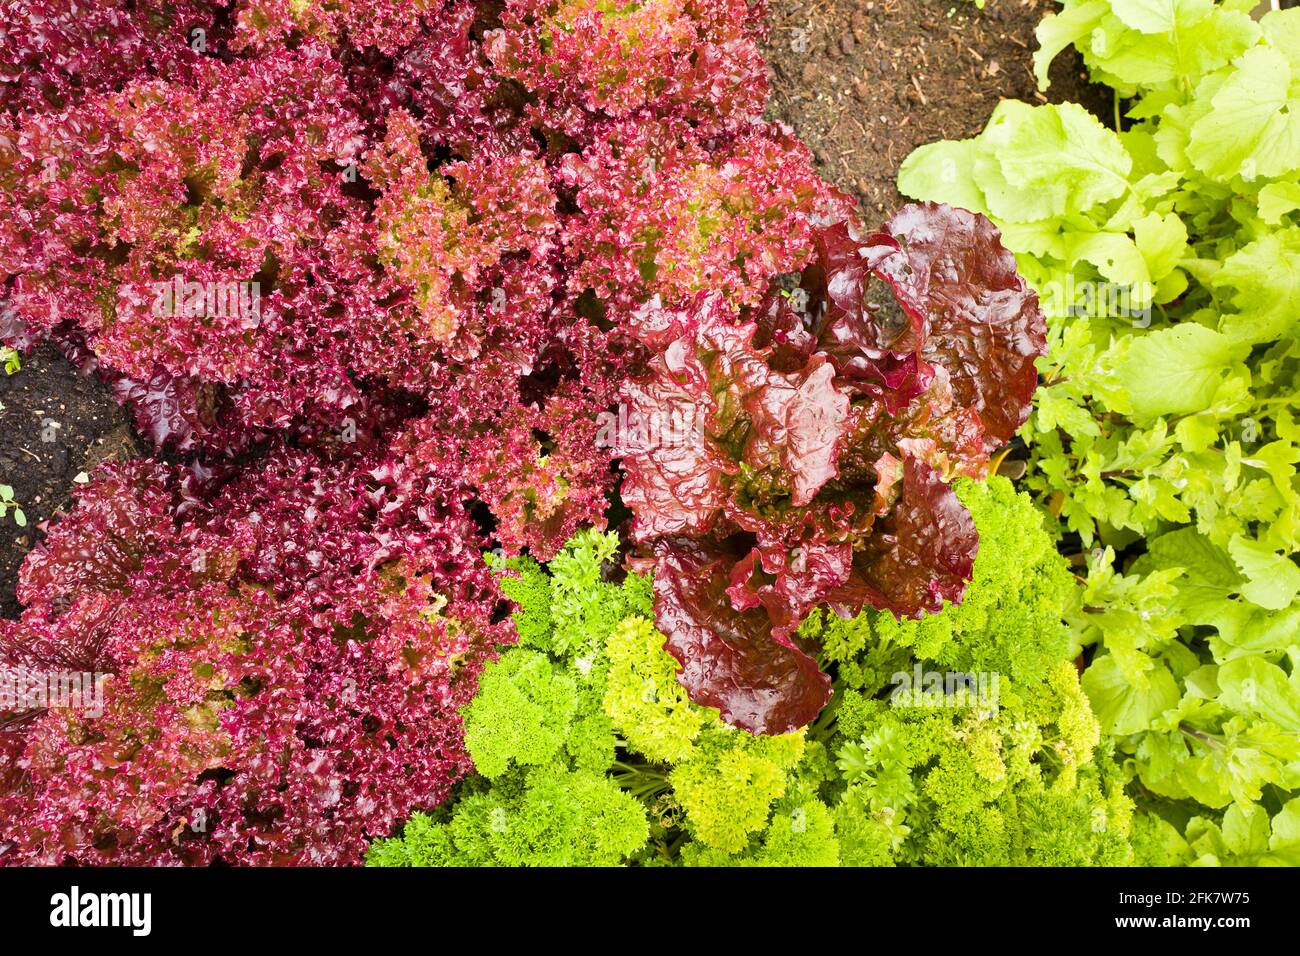 Lechuga Loolo Rosso creciendo en una cama con otra ensalada Cultivos vegetales en un jardín inglés Foto de stock